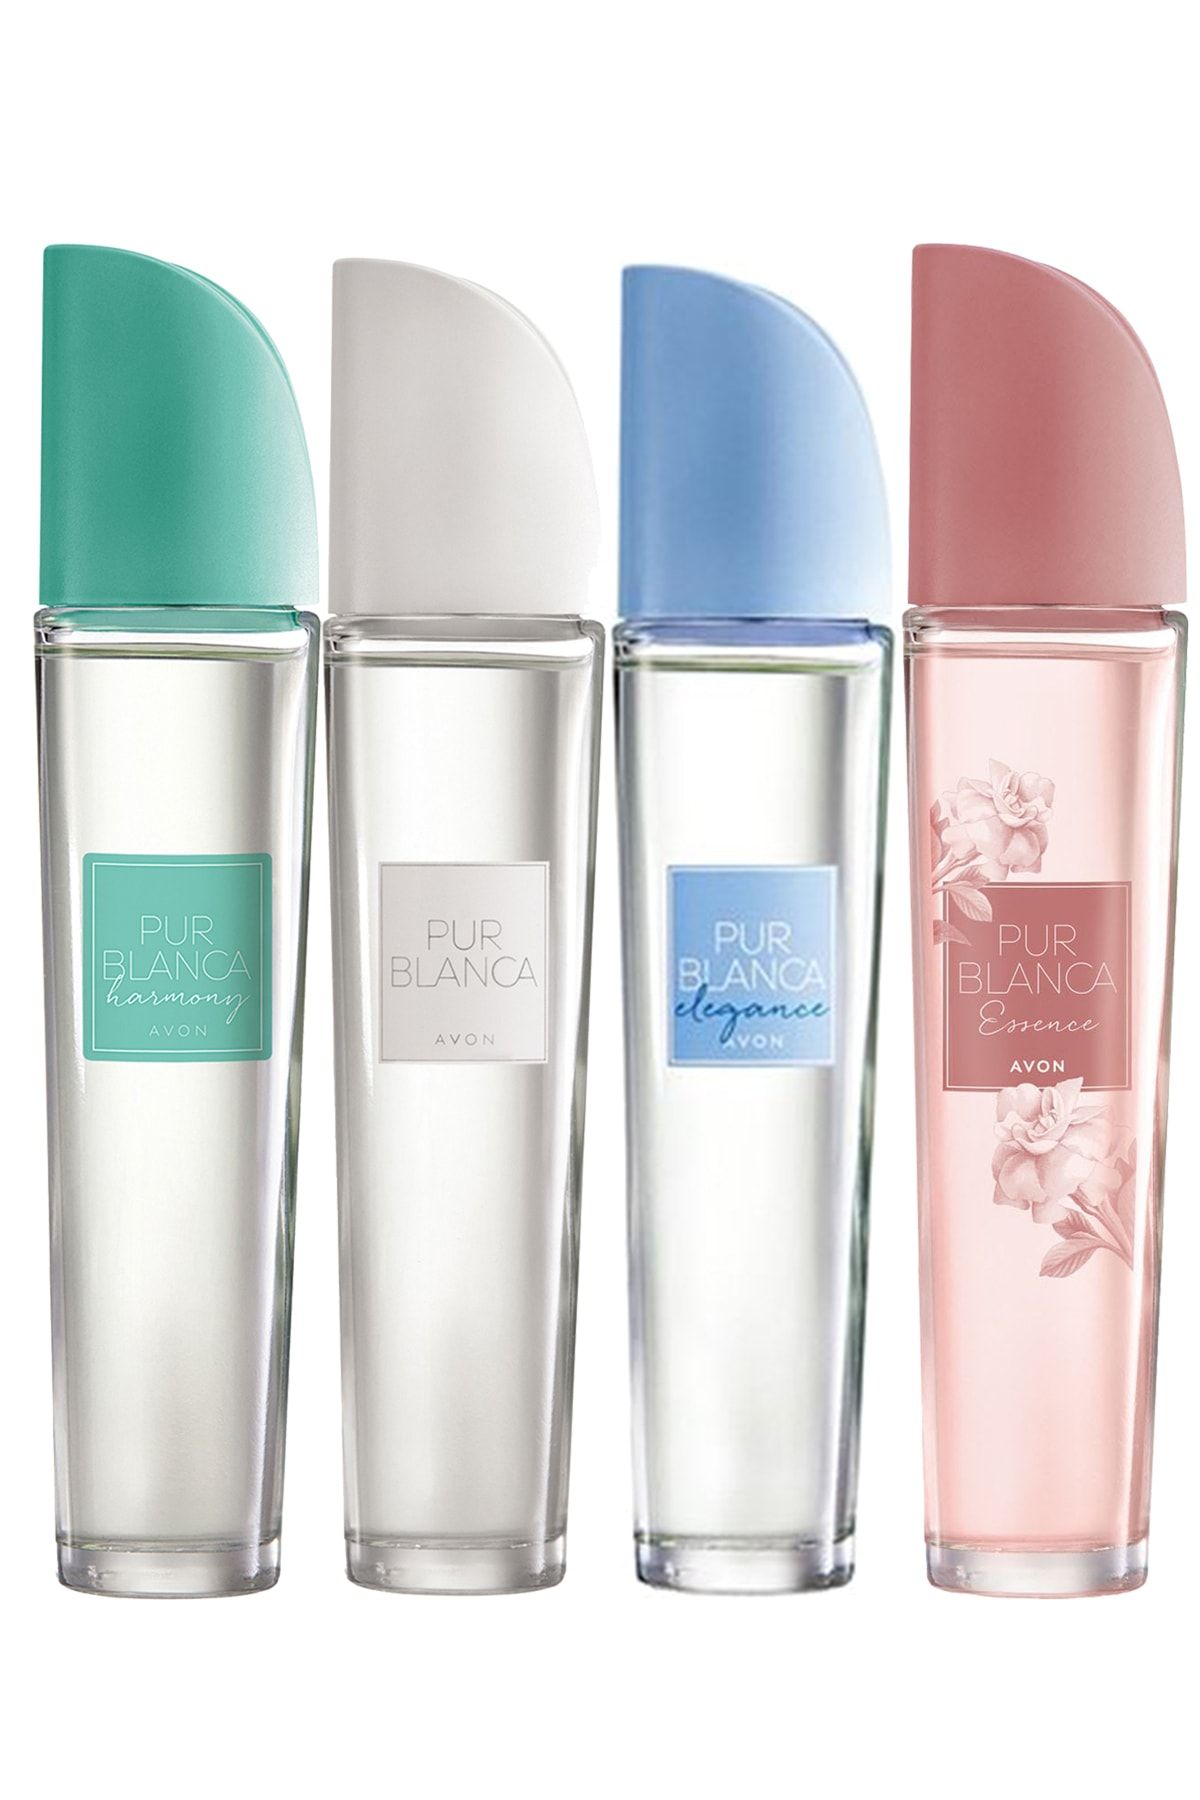 Avon Pur Blanca  Harmony Elegance Essence Edt 50 ml  Kadın Parfüm Paketi 4'lü